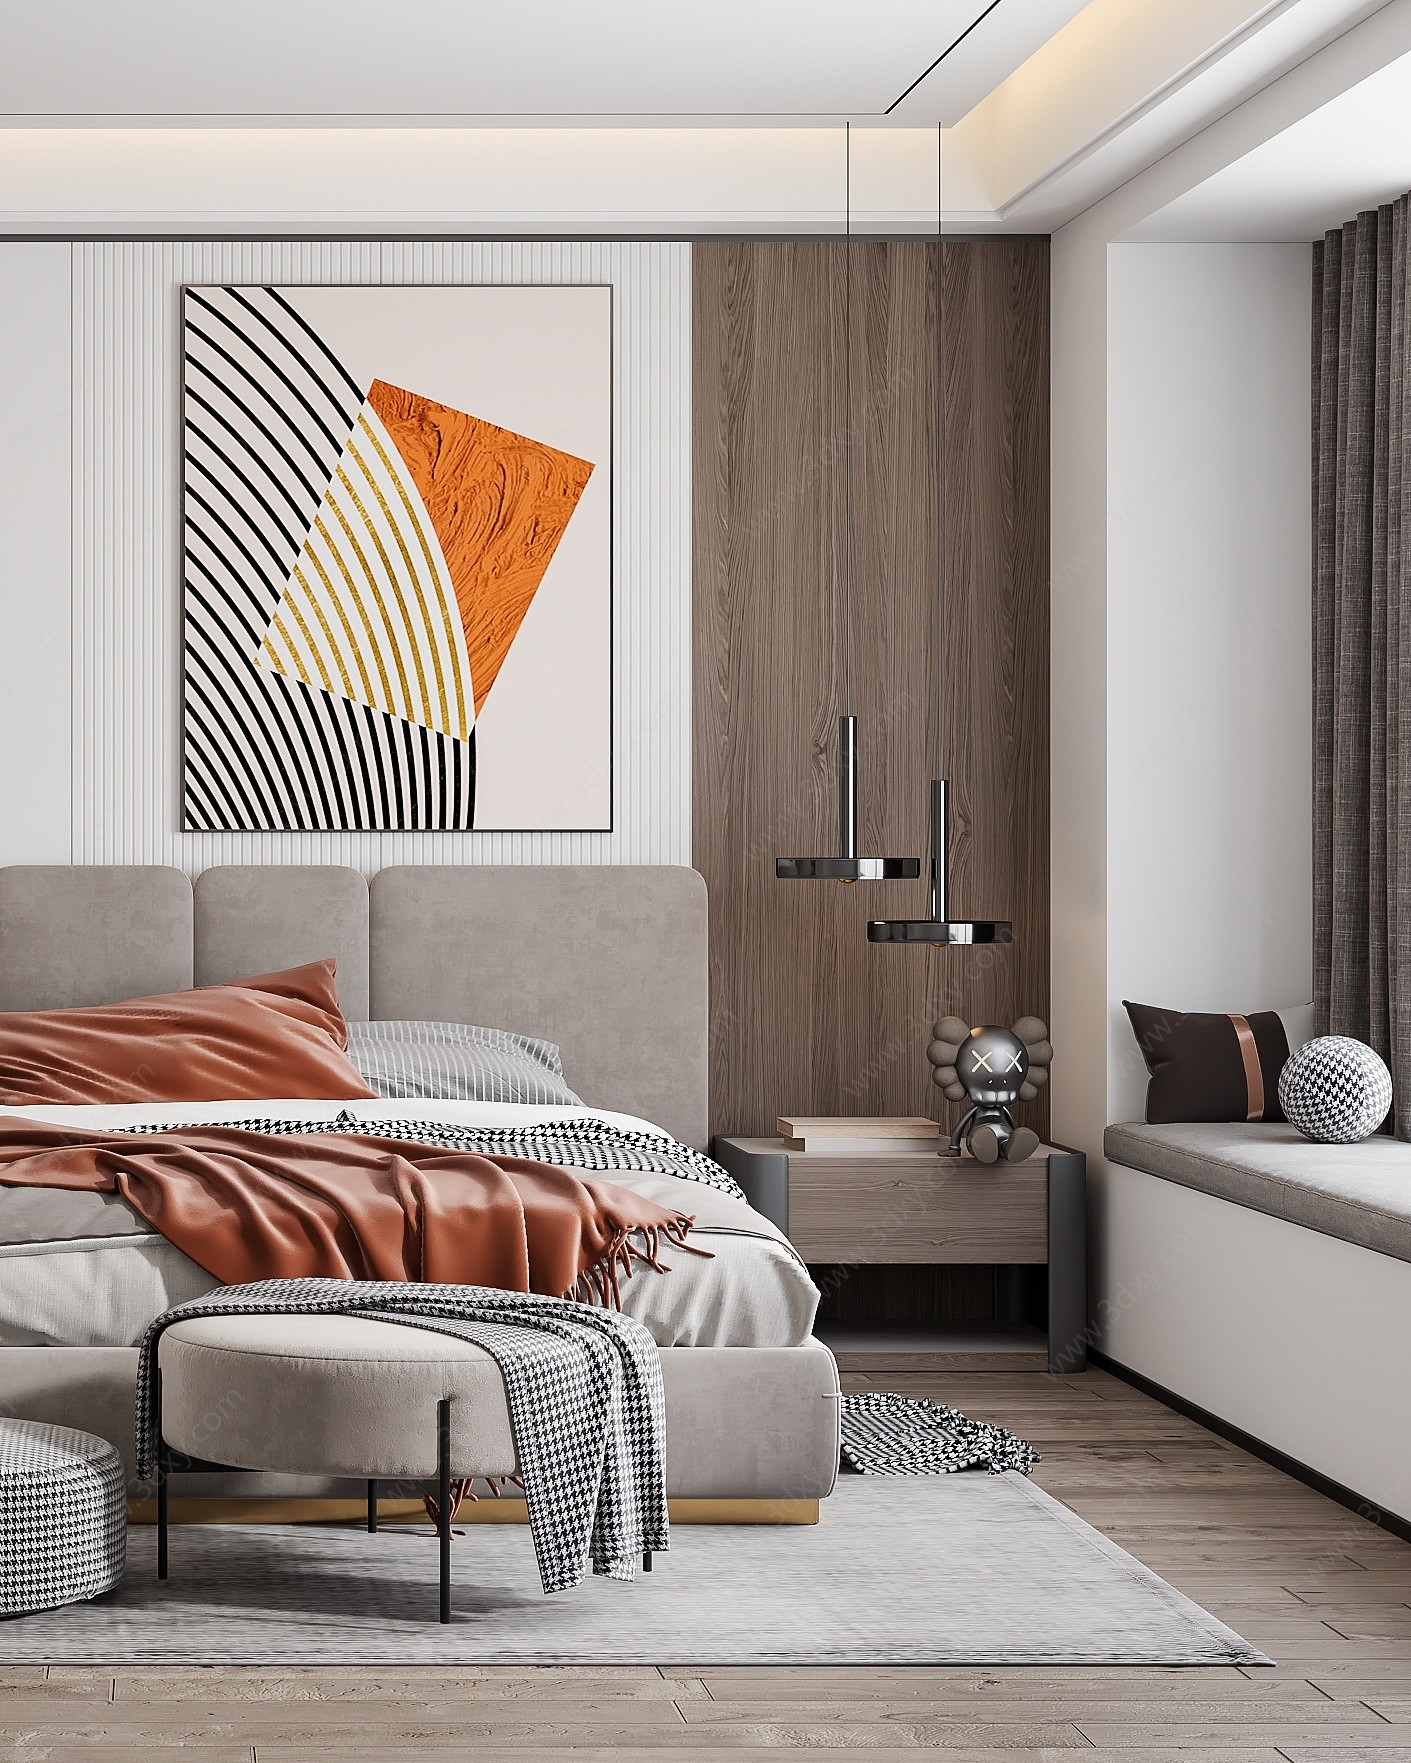 现代家居卧室房间3D模型